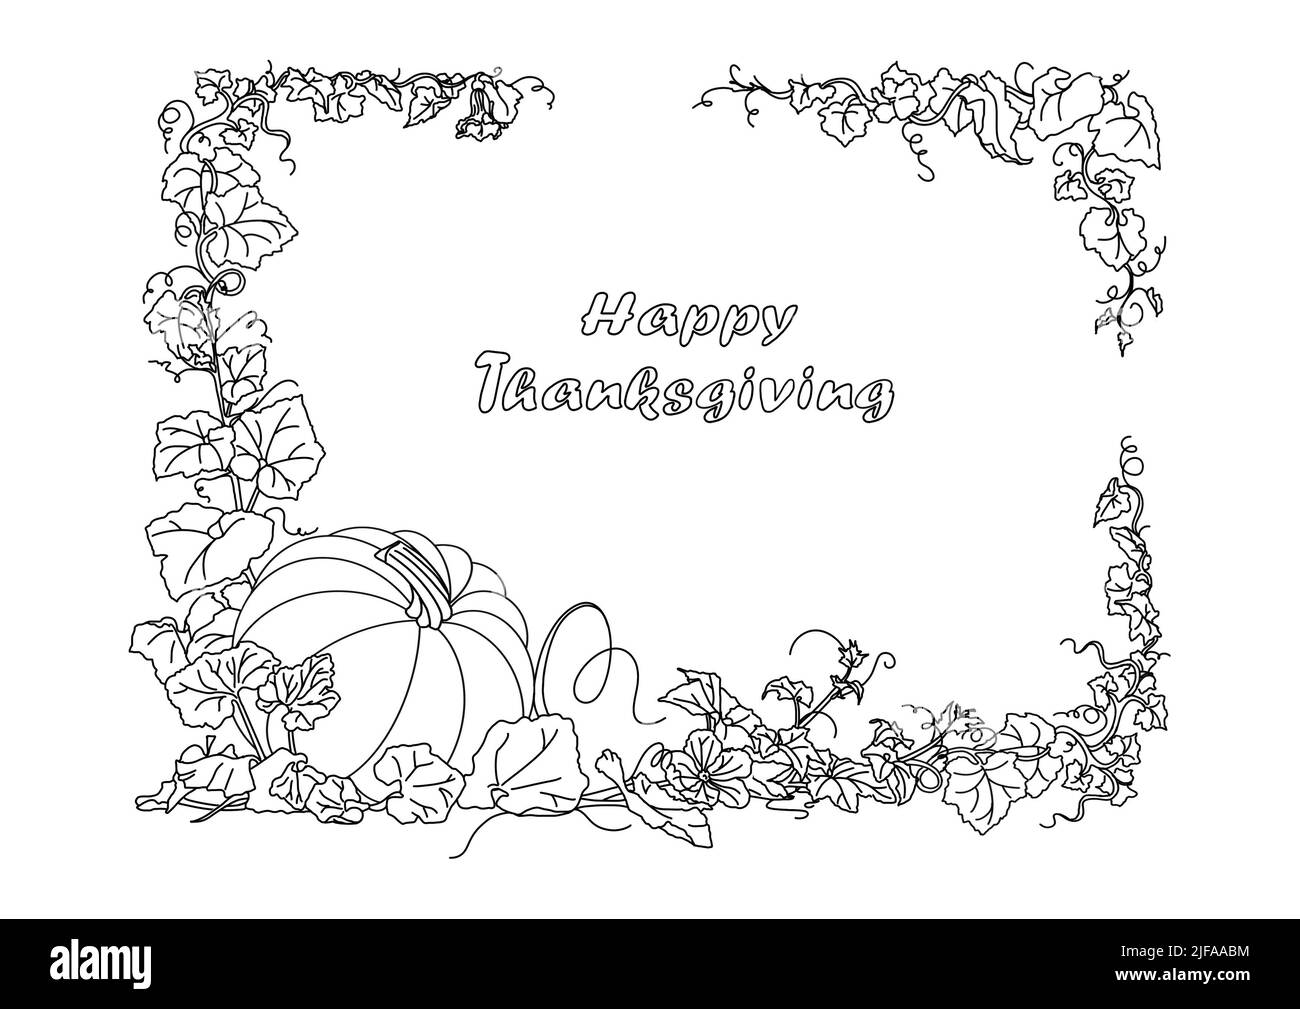 Ein Motiv mit Text und Bild zu Thanksgiving. Musterzeichnung für Hintergrund, Postkarte oder Poster. Malbuch. Stockfoto